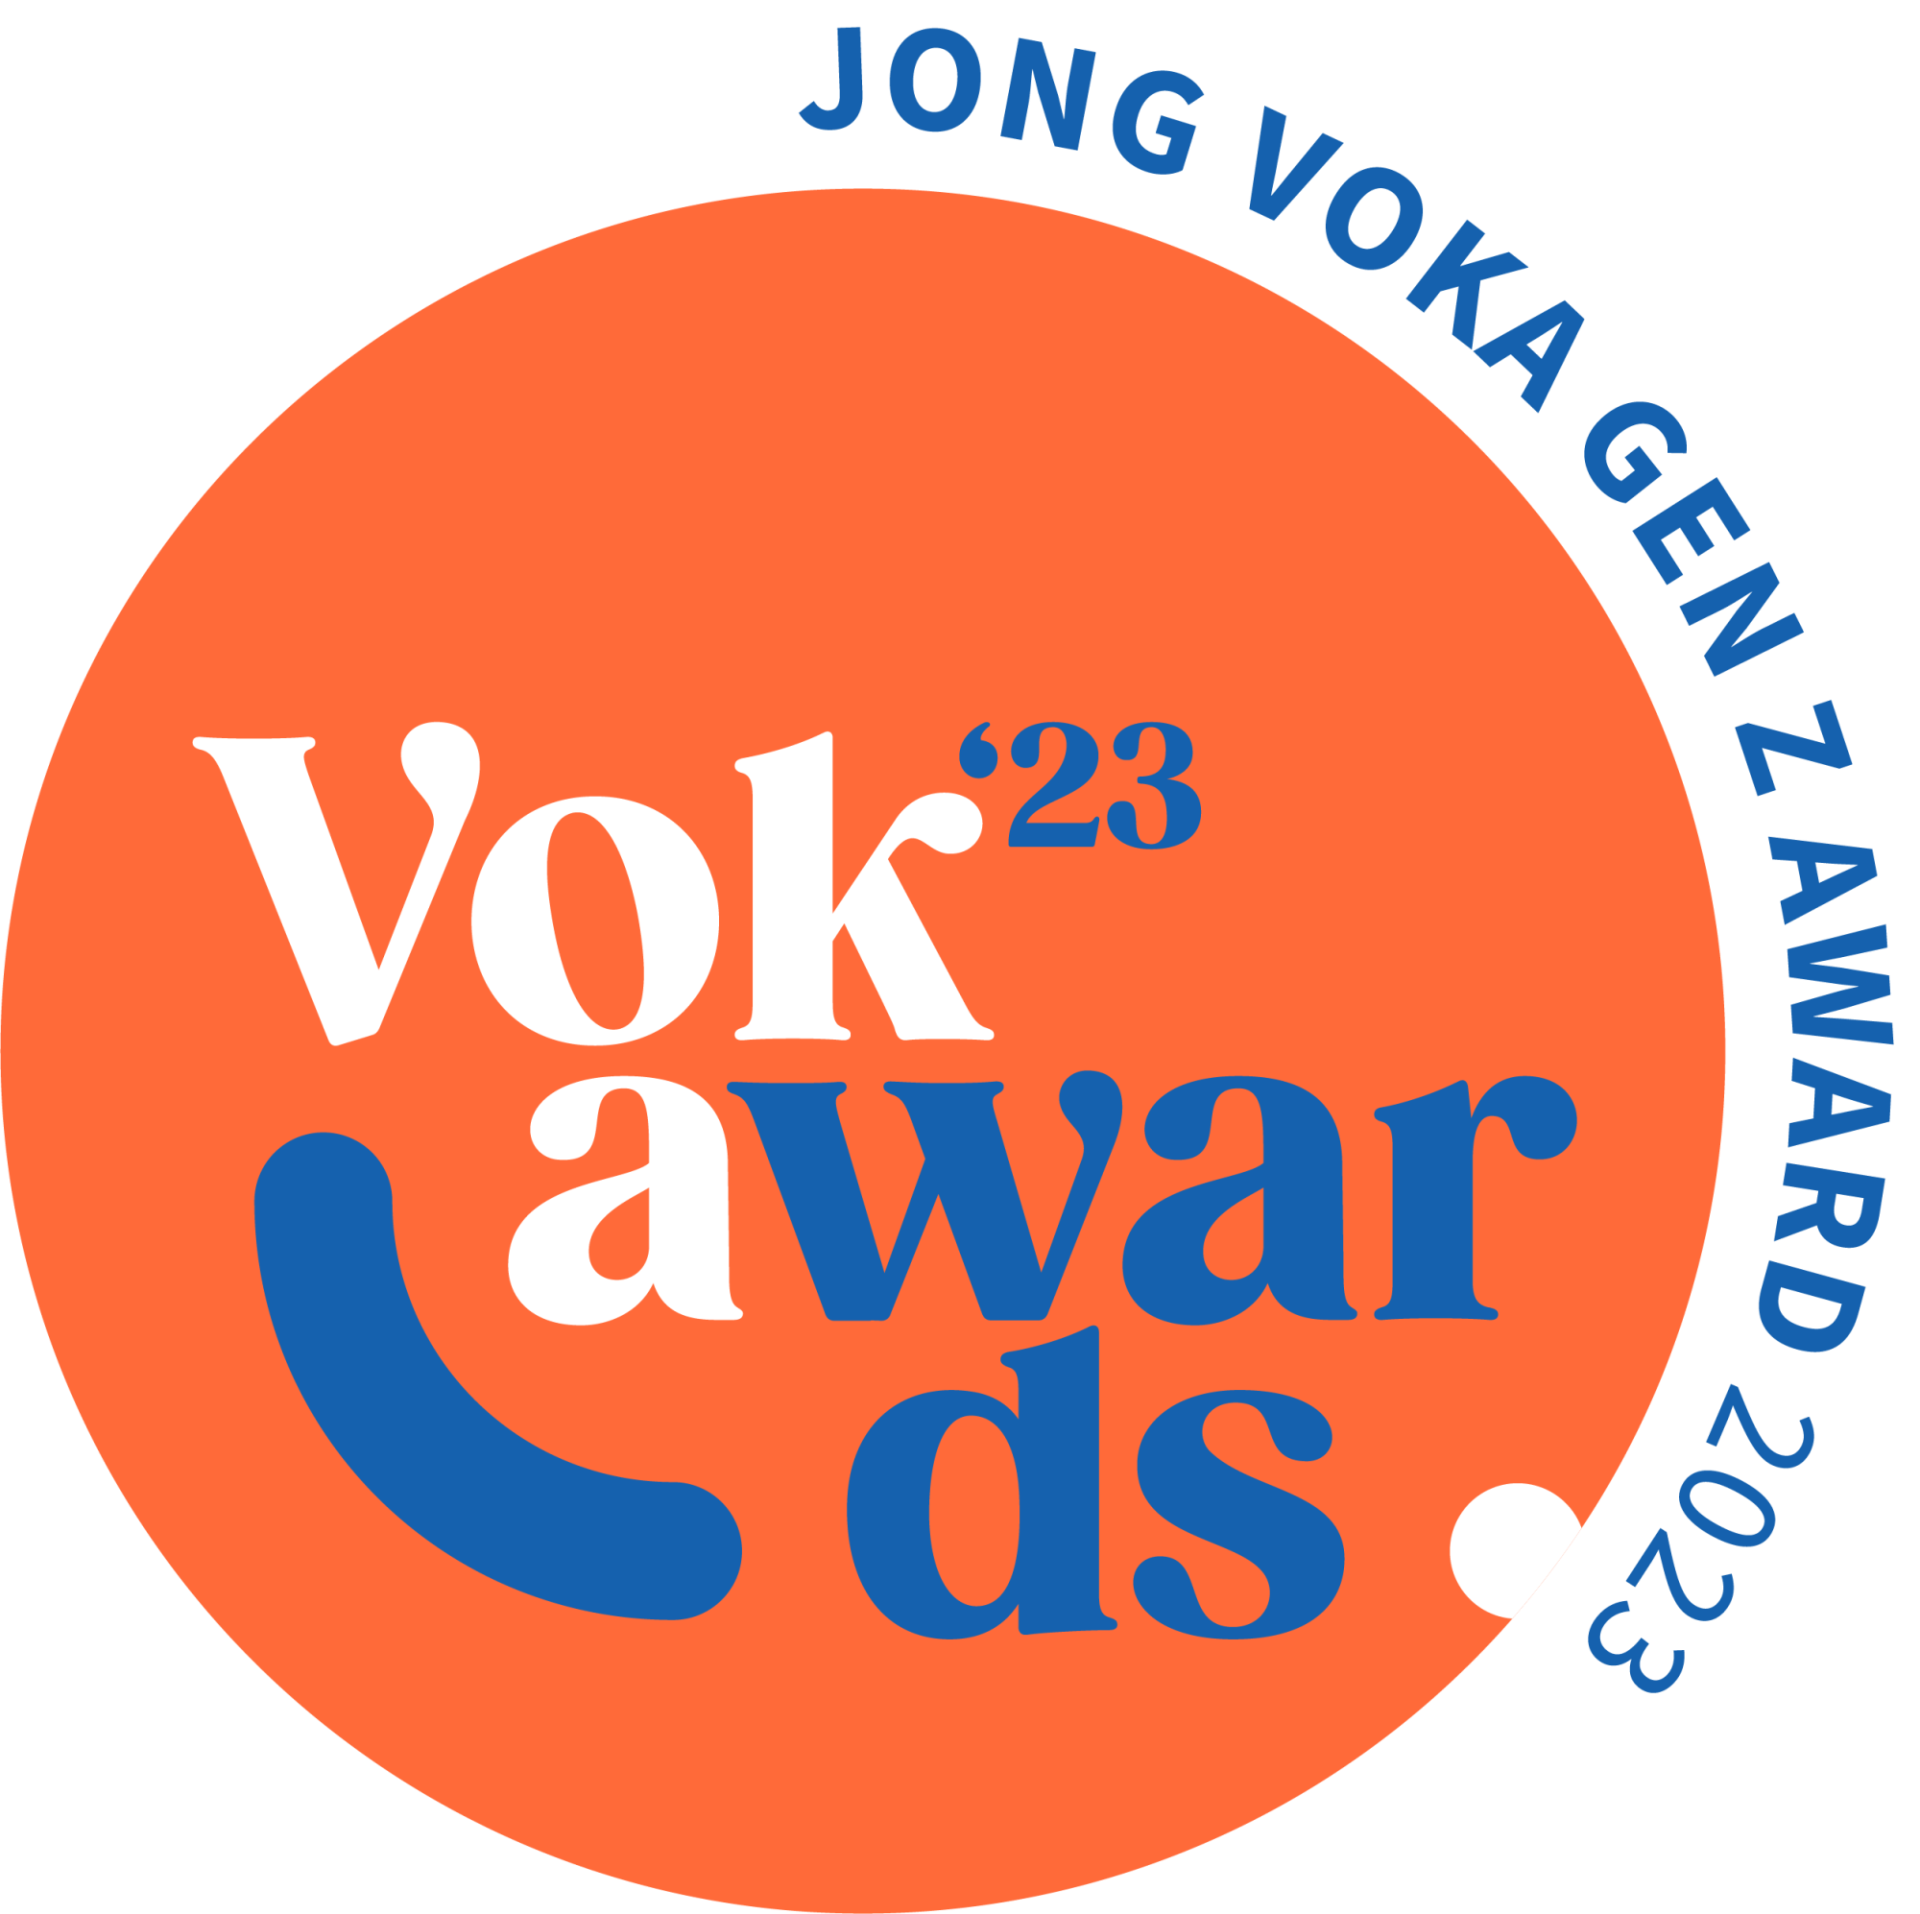 Vokawards 'Jong Voka Gen Z award'